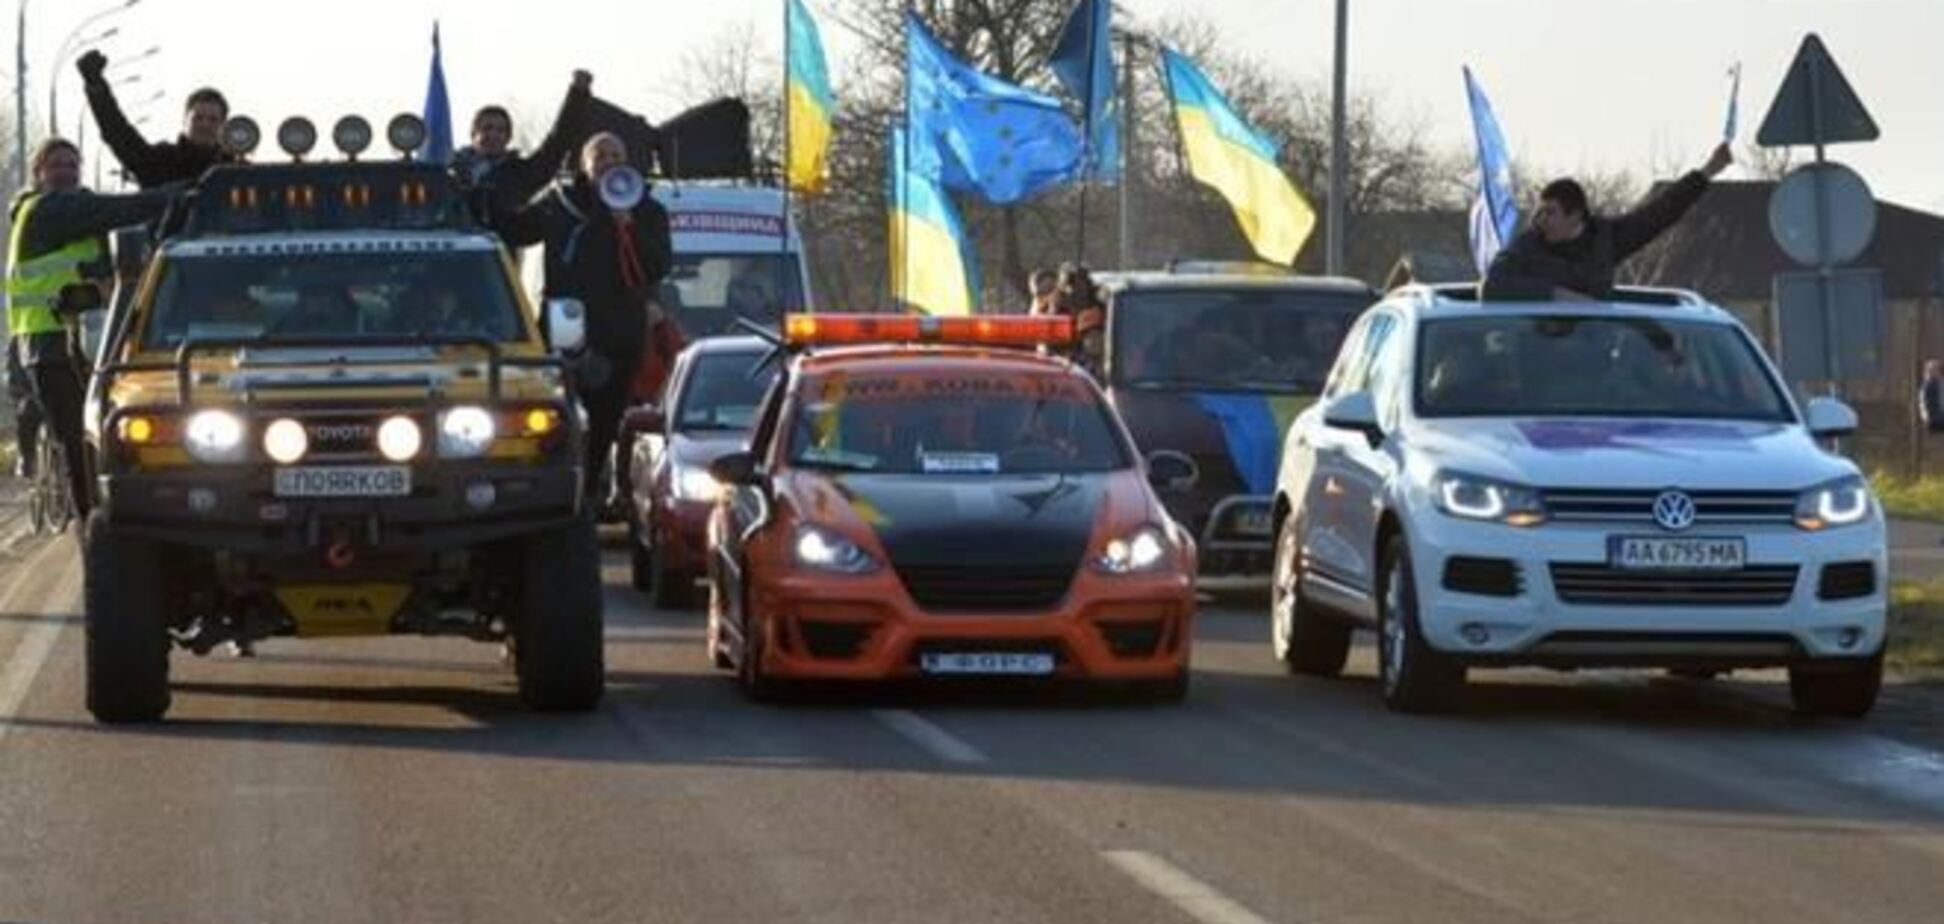 Експерт: закон про заборону автоколон звільнить Київ від пробок